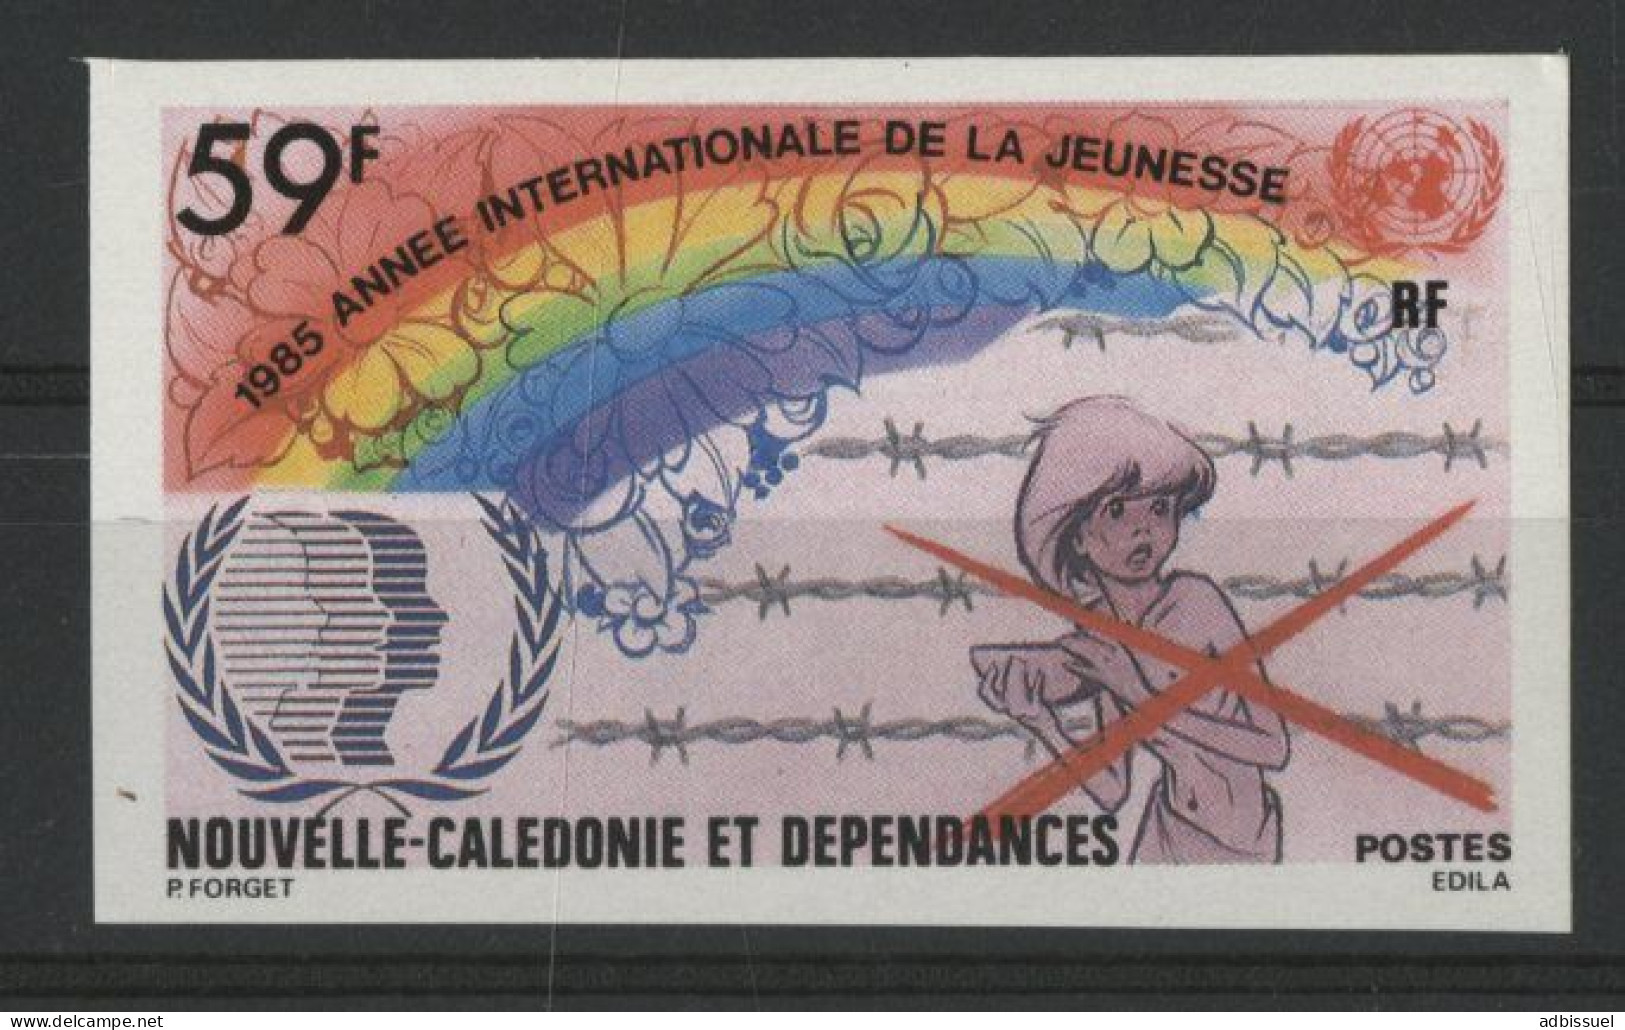 NOUVELLE CALEDONIE N° 507 NON DENTELES Neufs ** 59 Fr  Année Internationale De La Jeunesse. TB - Unused Stamps